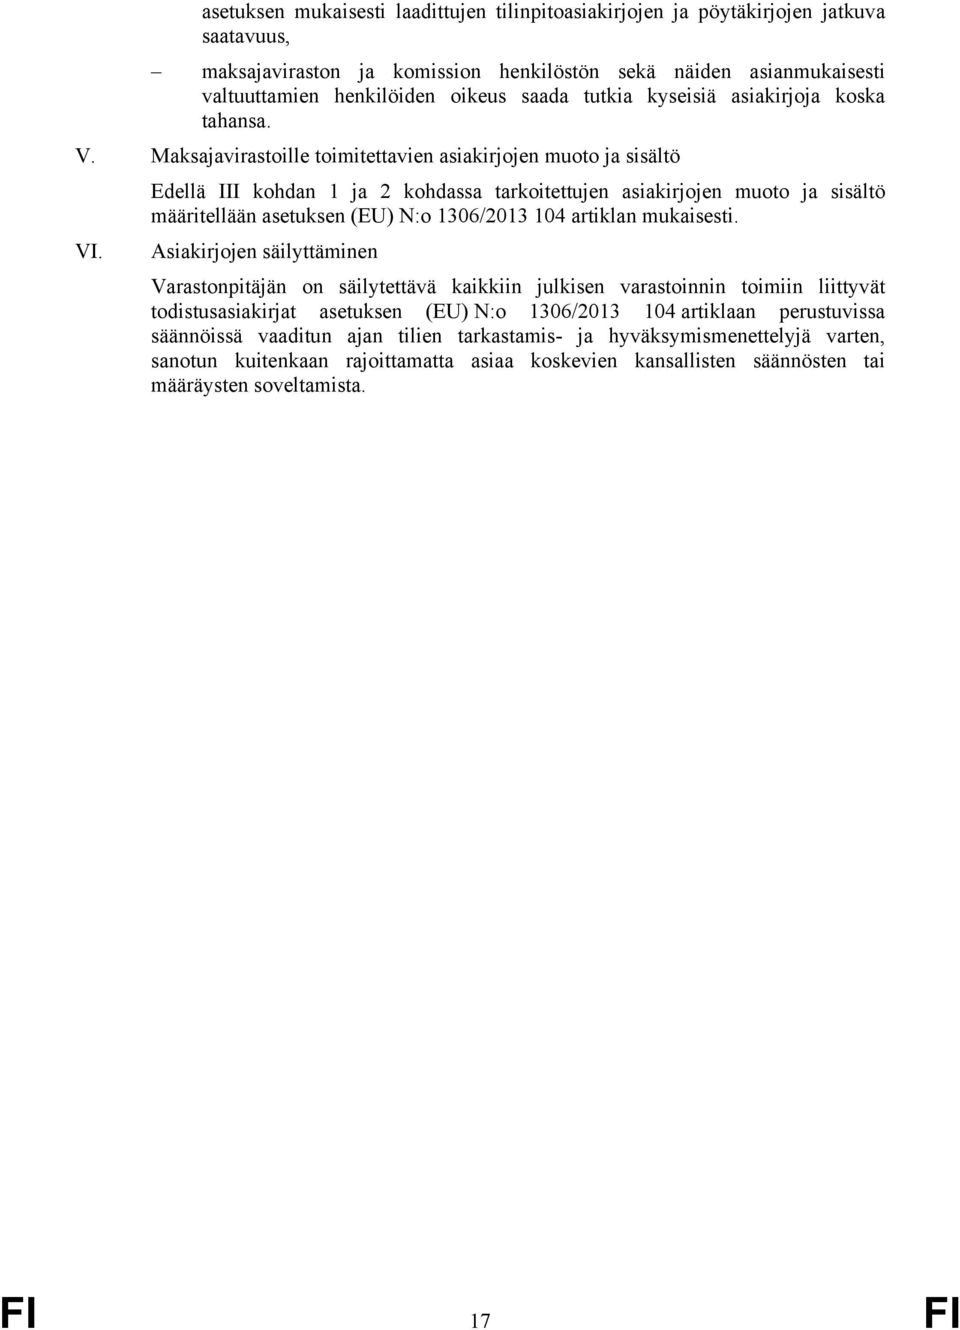 Maksajavirastoille toimitettavien asiakirjojen muoto ja sisältö Edellä III kohdan 1 ja 2 kohdassa tarkoitettujen asiakirjojen muoto ja sisältö määritellään asetuksen (EU) N:o 1306/2013 104 artiklan